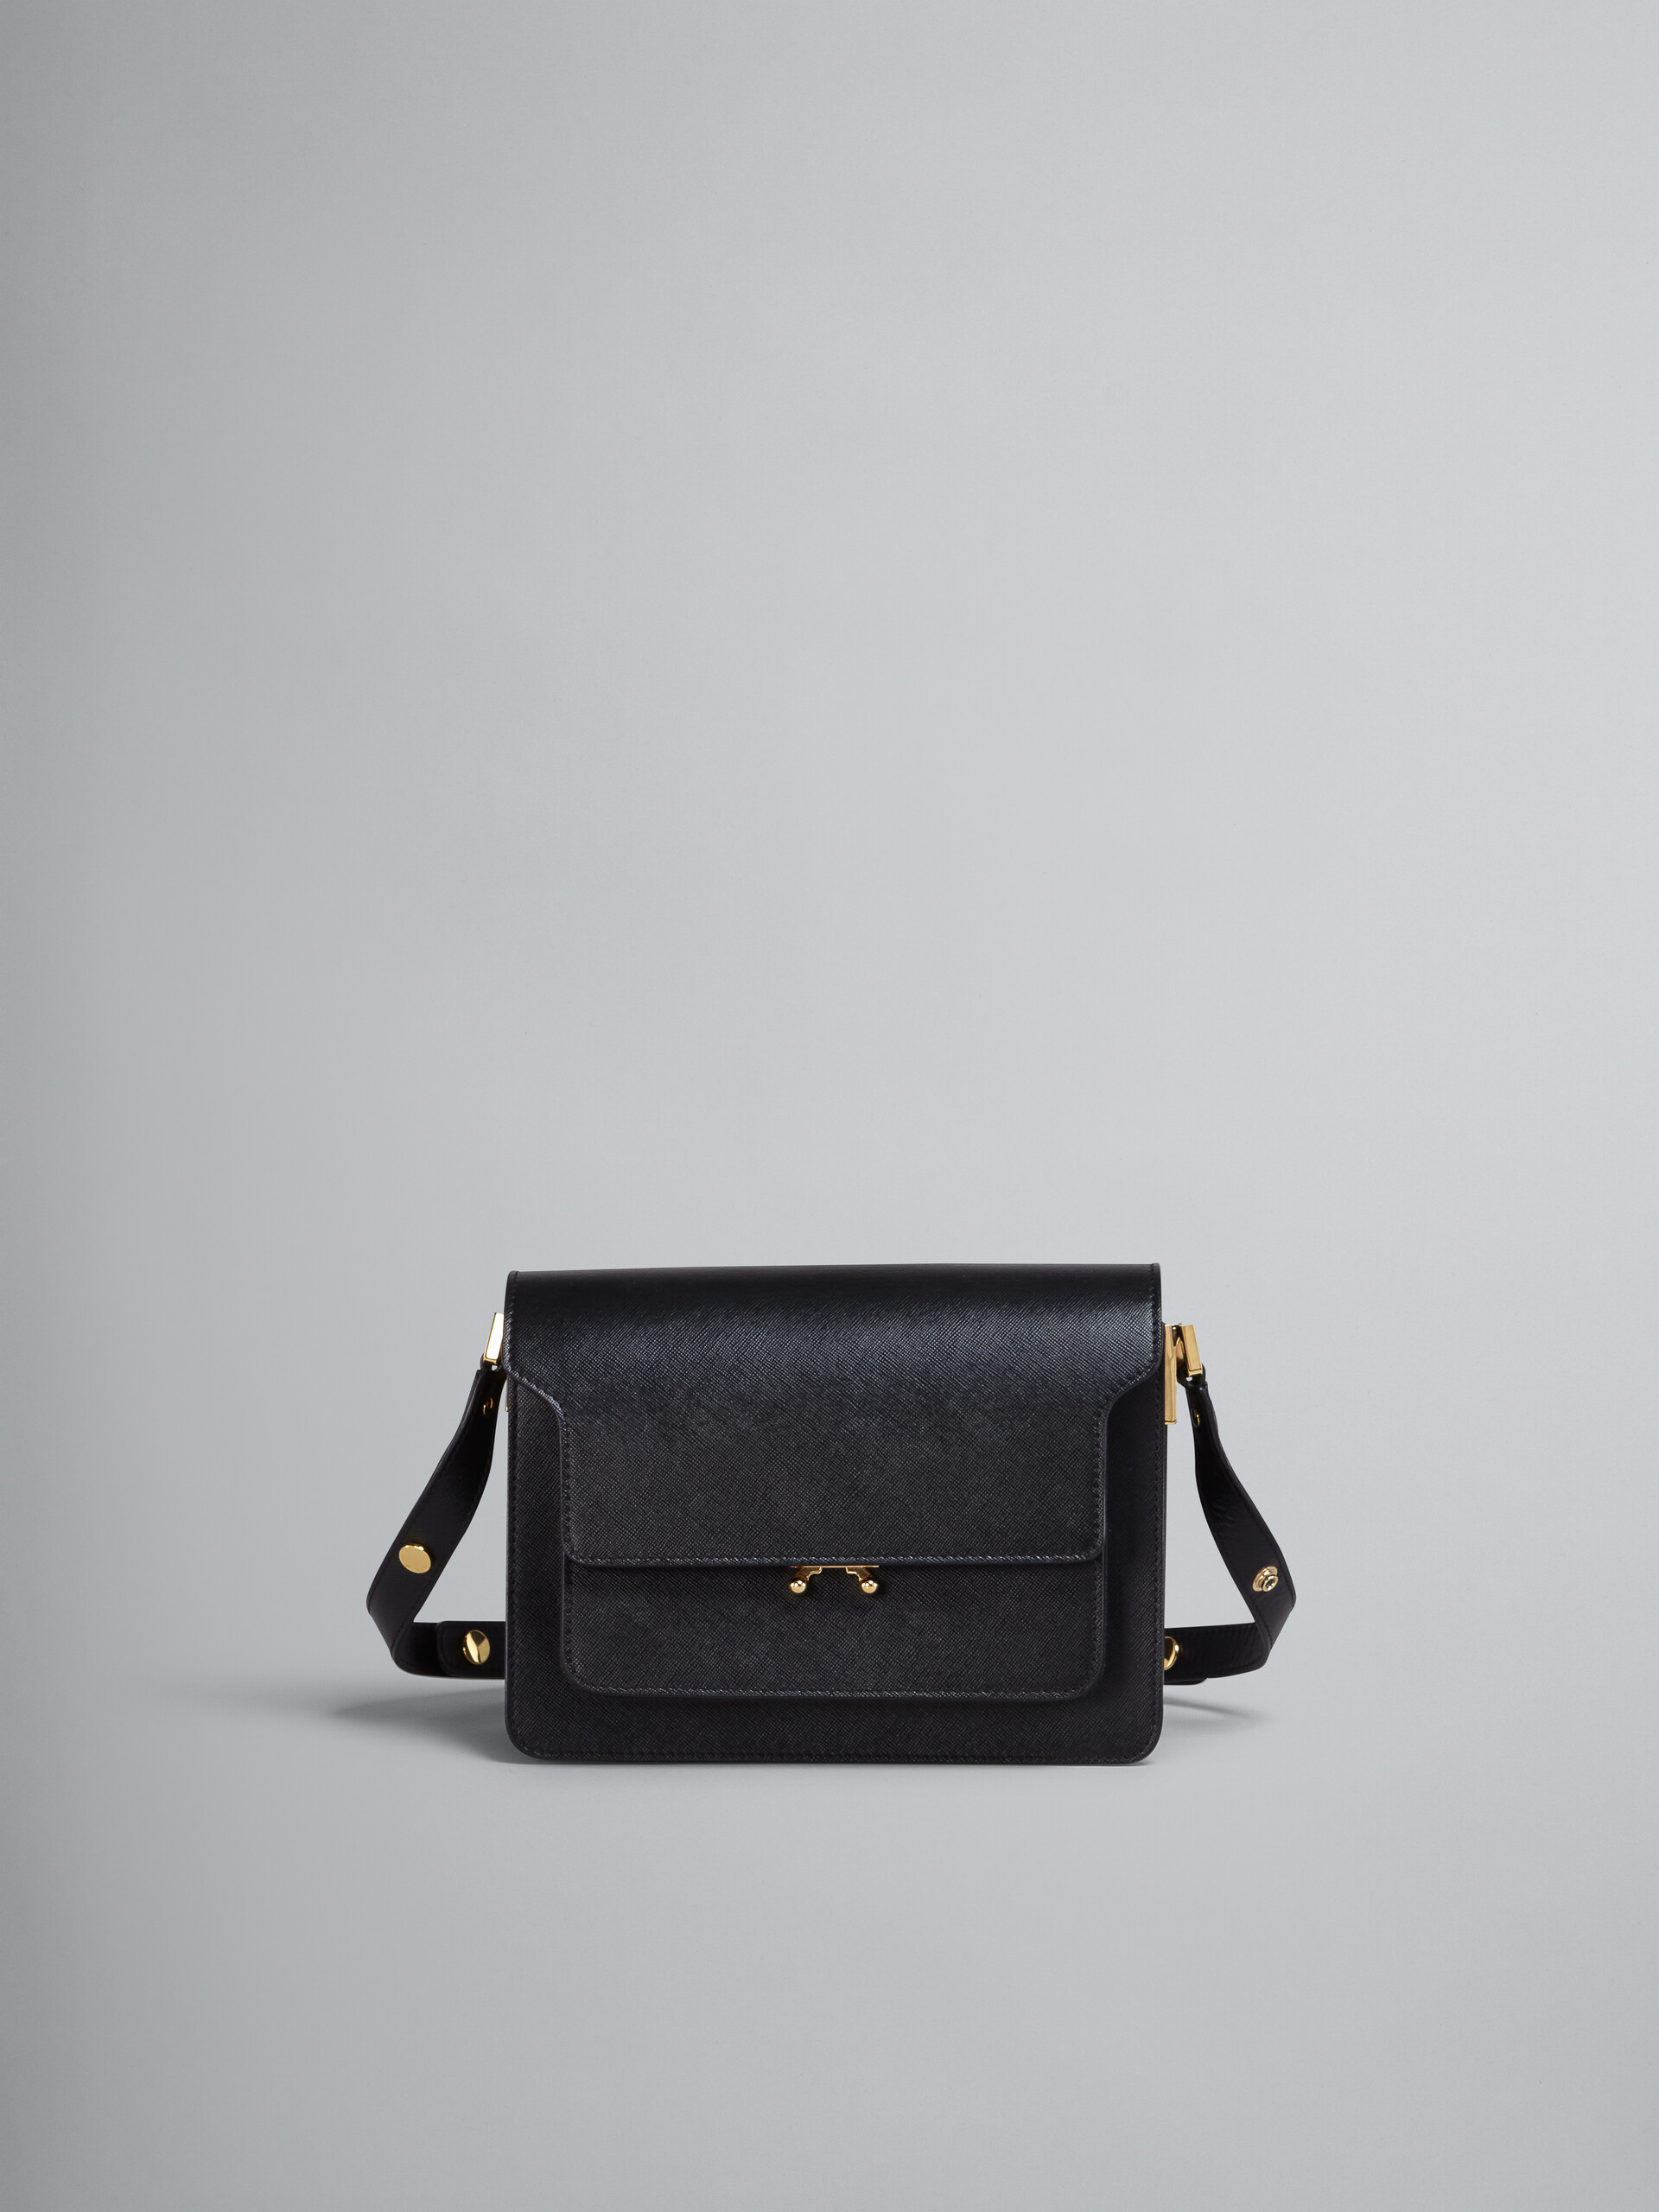 TRUNK medium bag in black saffiano leather - Shoulder Bag - Image 1